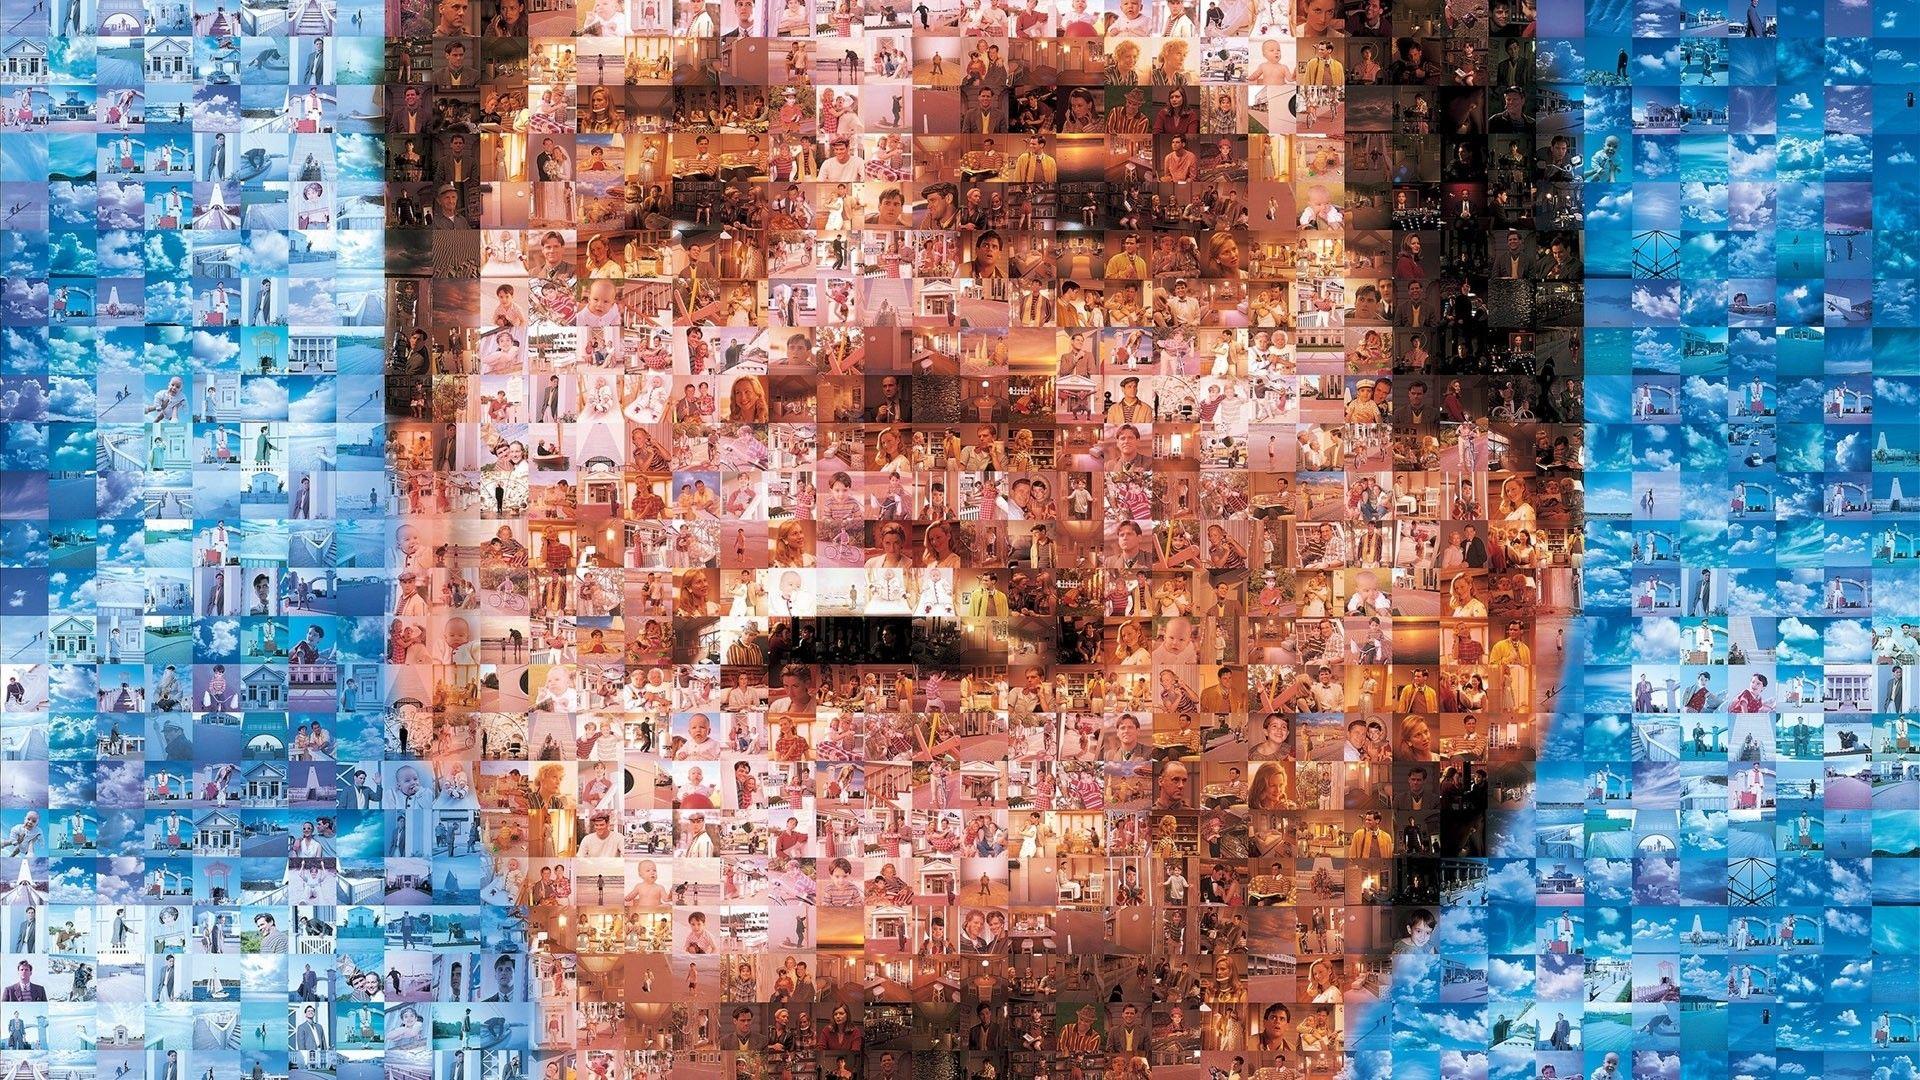 mosaic, screenshots, Jim Carrey, smiling, artwork, faces